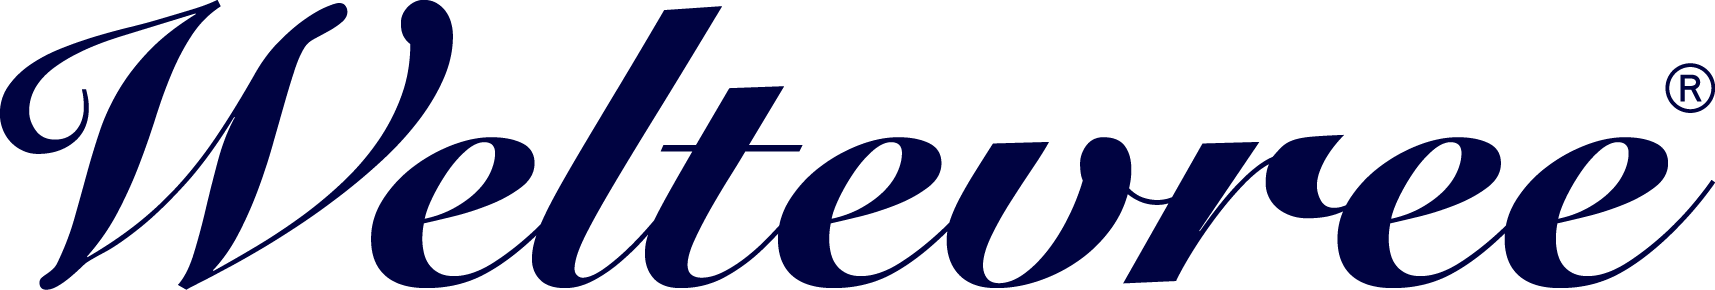 Weltevree-logo